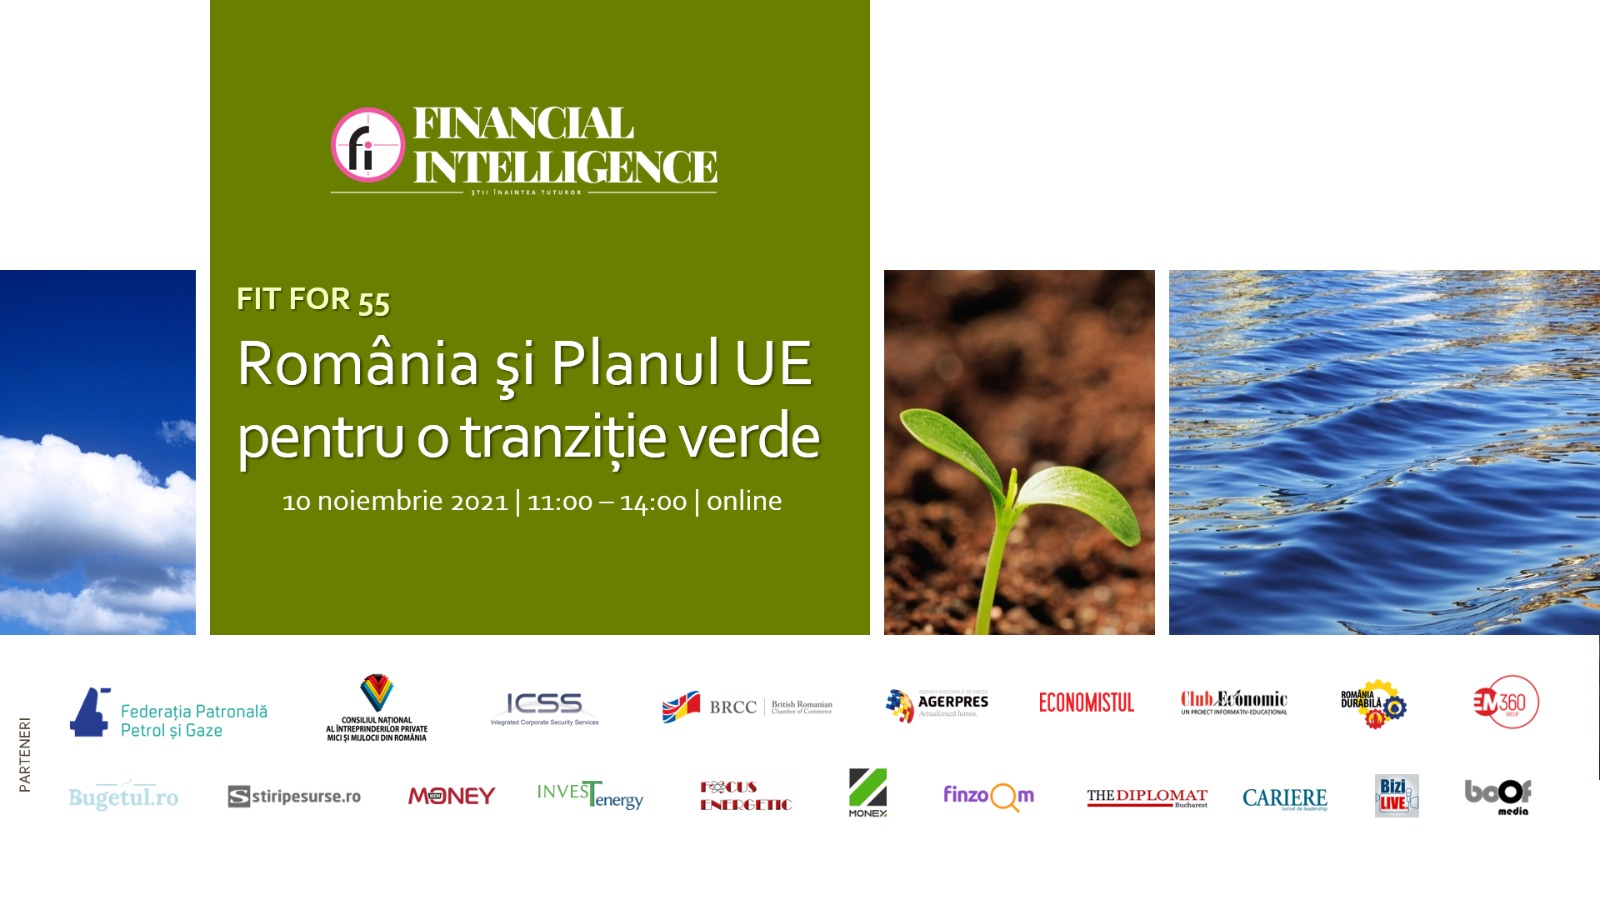 Financial Intelligence organizează evenimentul “FIT FOR 55 – România şi Planul UE pentru o tranziție verde”